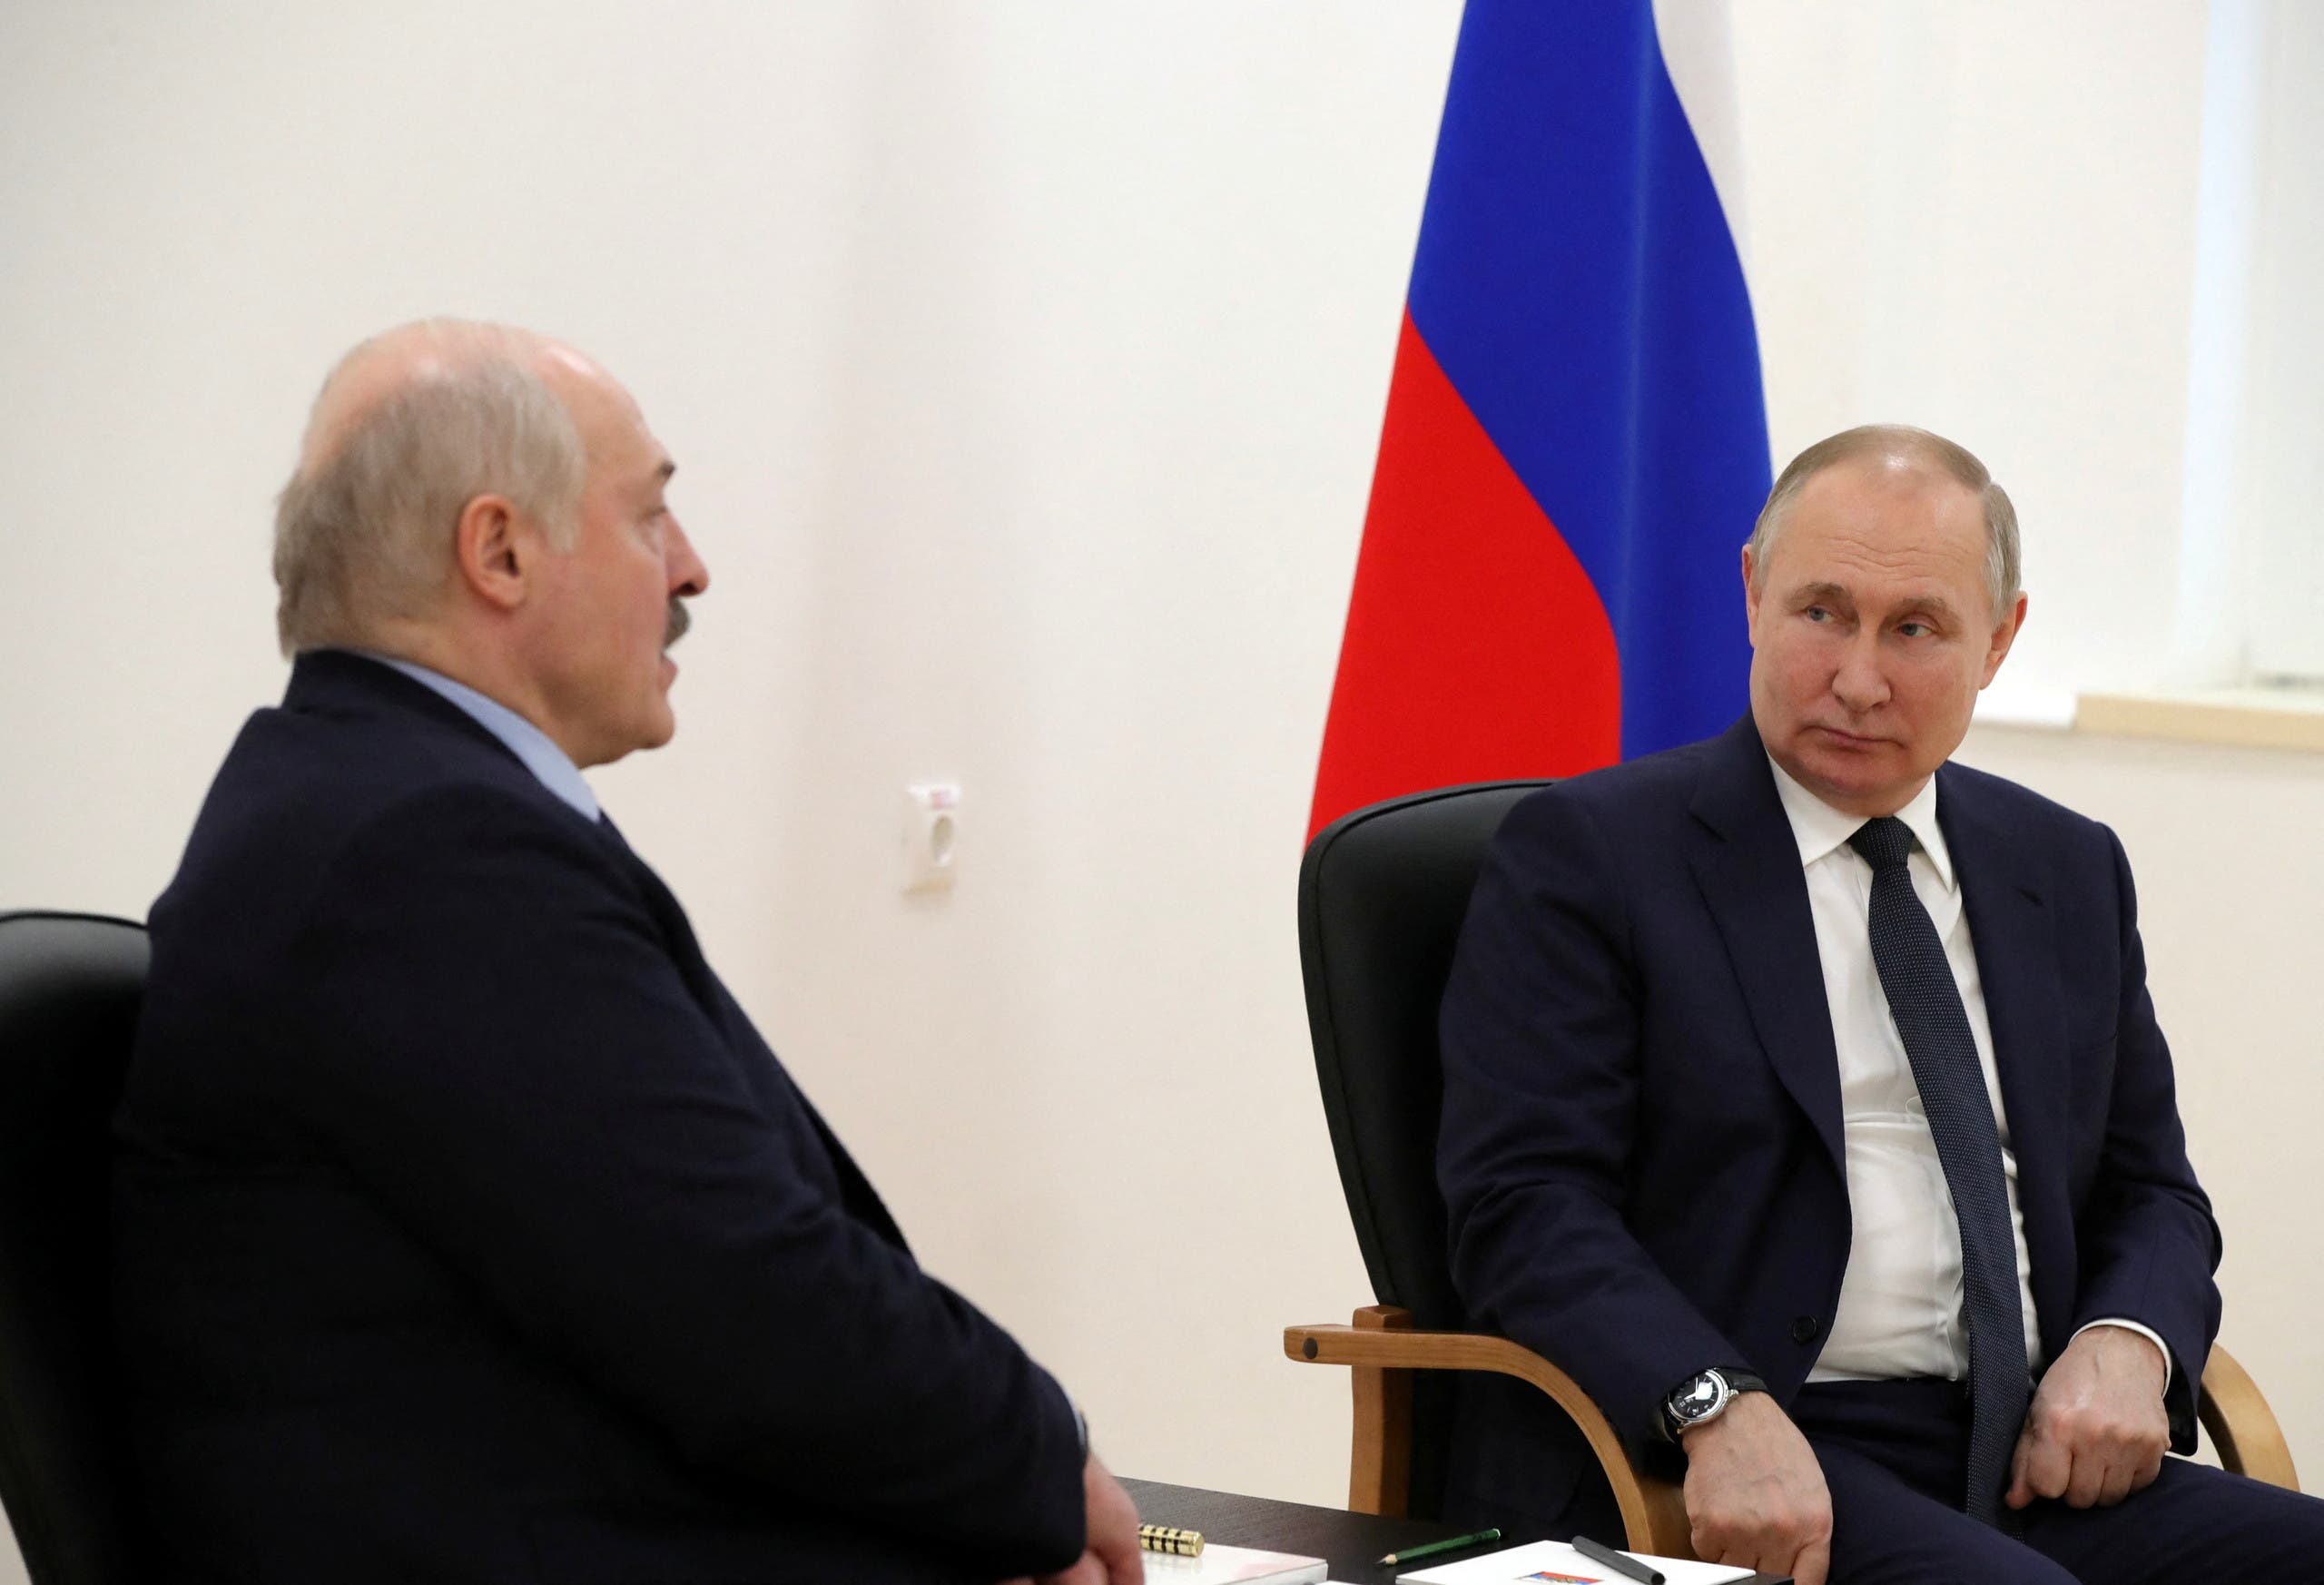 الرئيسان الروسي بوتين والبيلاروسي لوكاشينكو